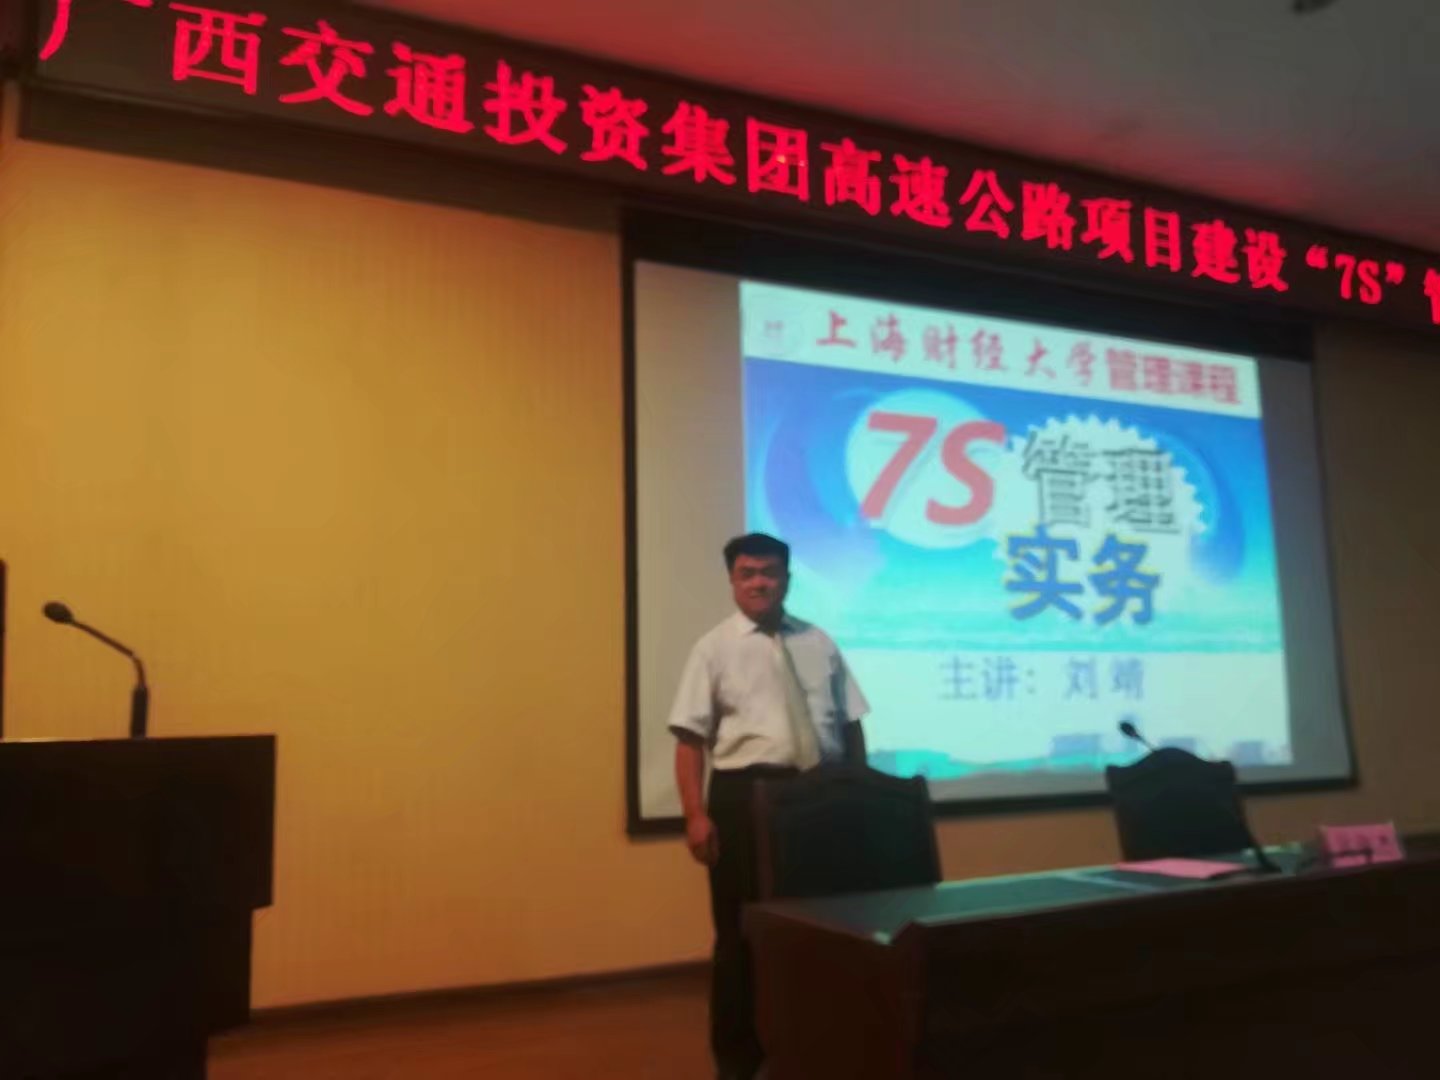 刘靖:刘靖老师视频《7S管理5项准备工作》